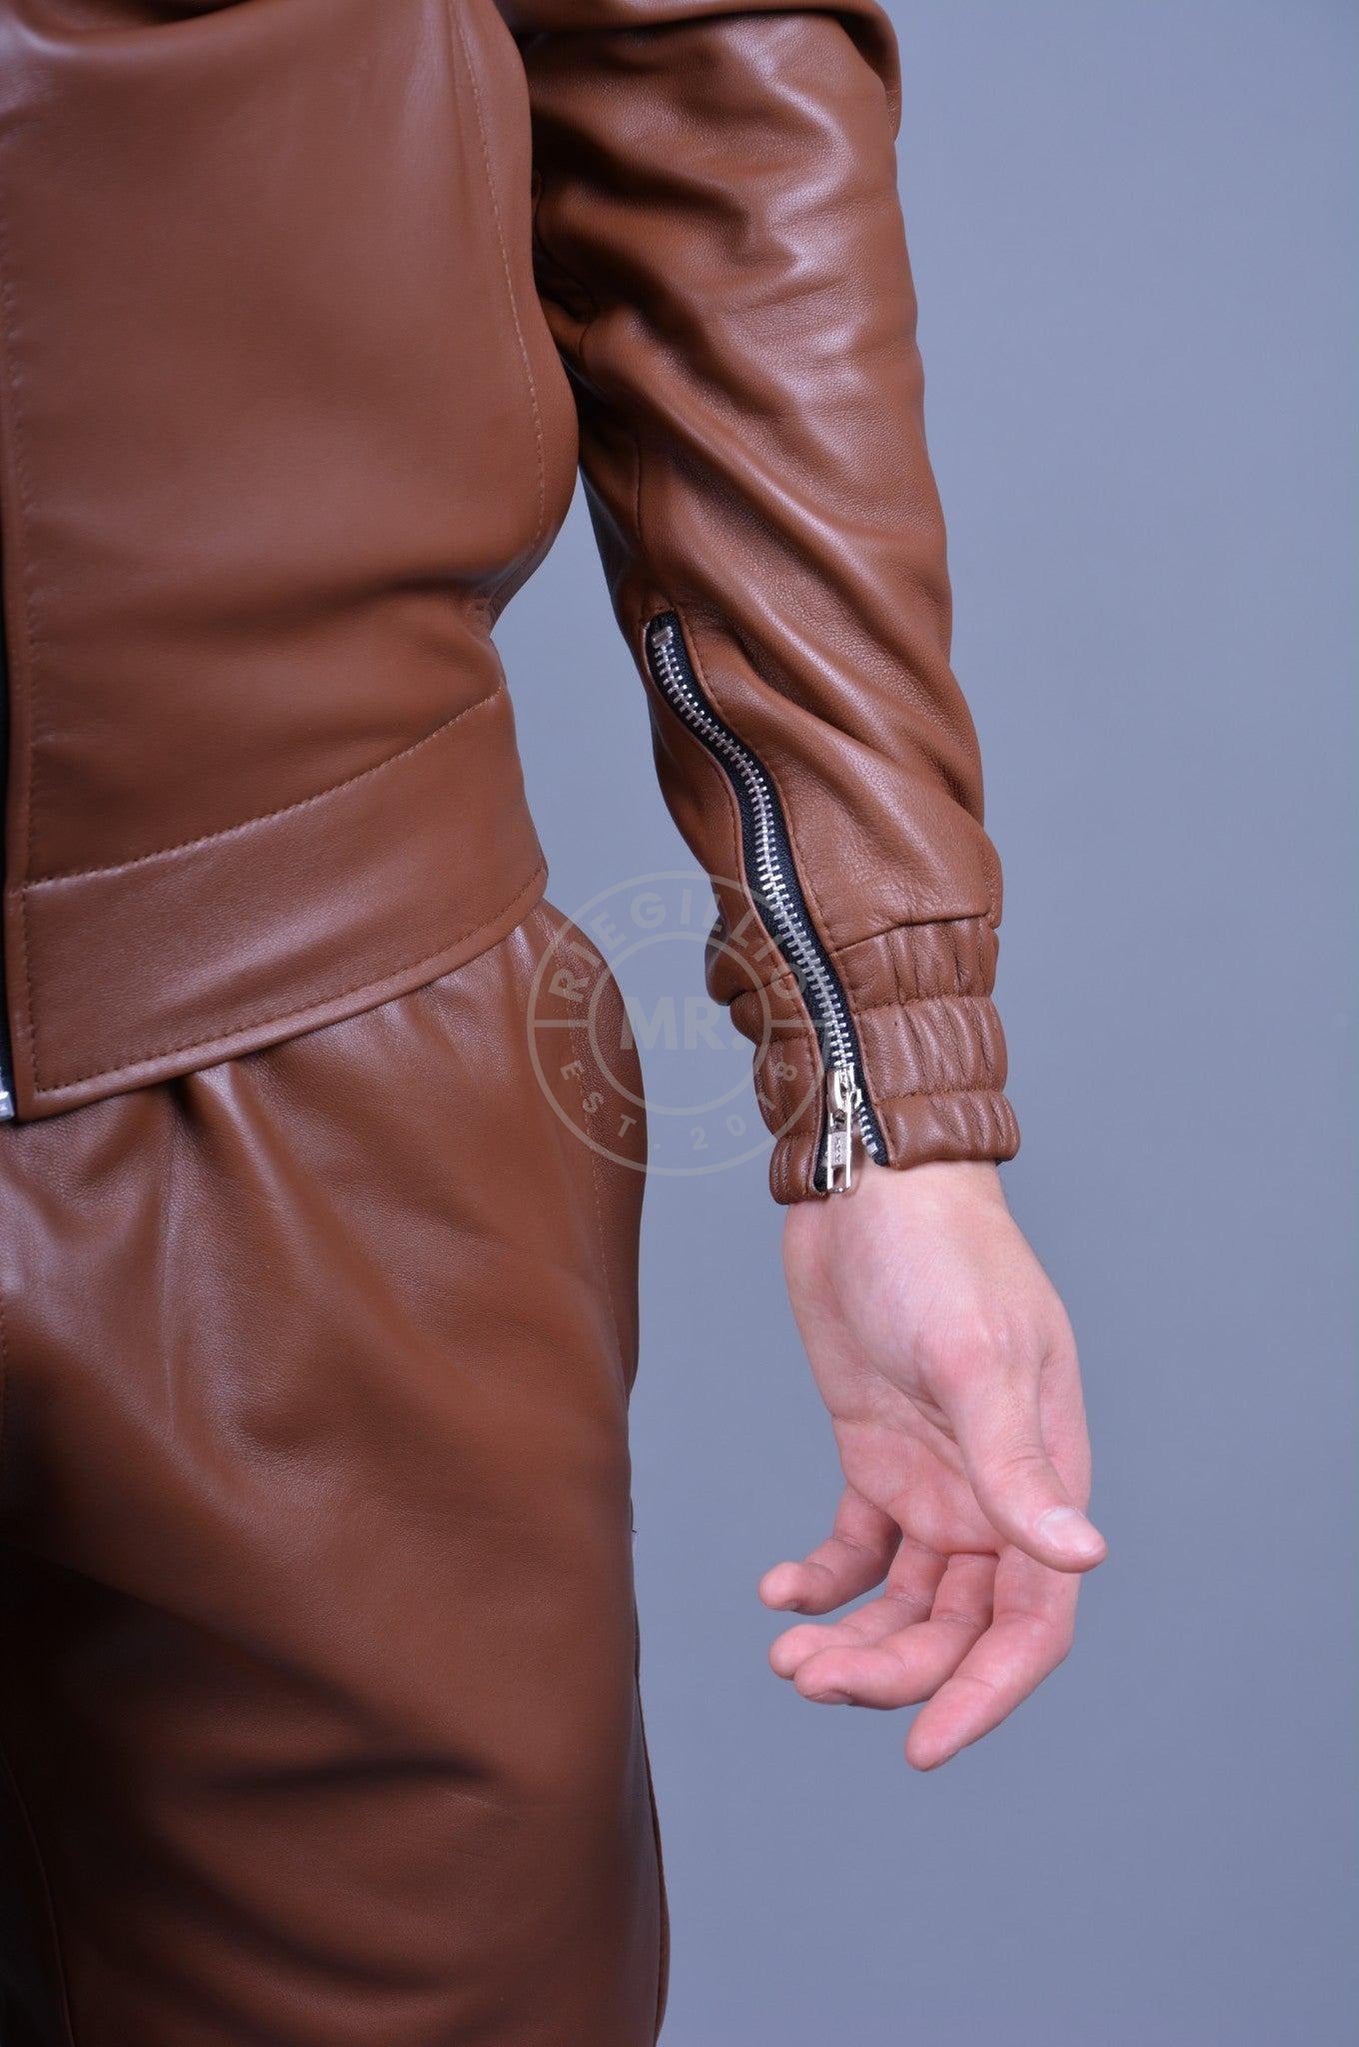 Cinnamon Brown Leather Tracksuit Jacket at MR. Riegillio